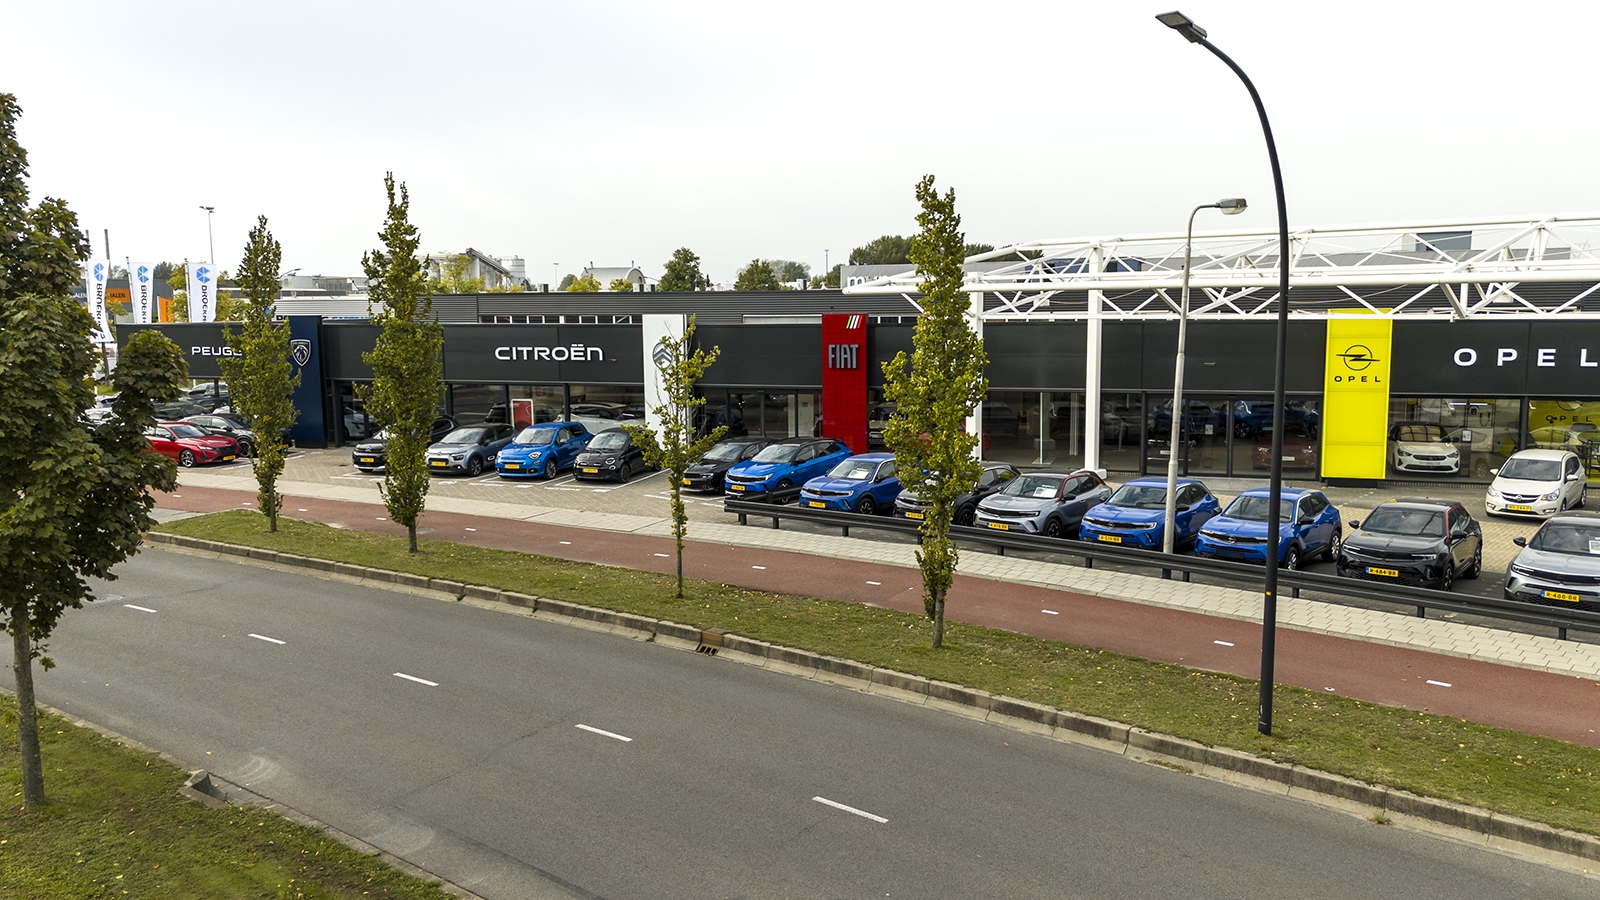 Broekhuis Opel / Fiat / Citroën / Fiat is op zoek naar een Service Adviseur